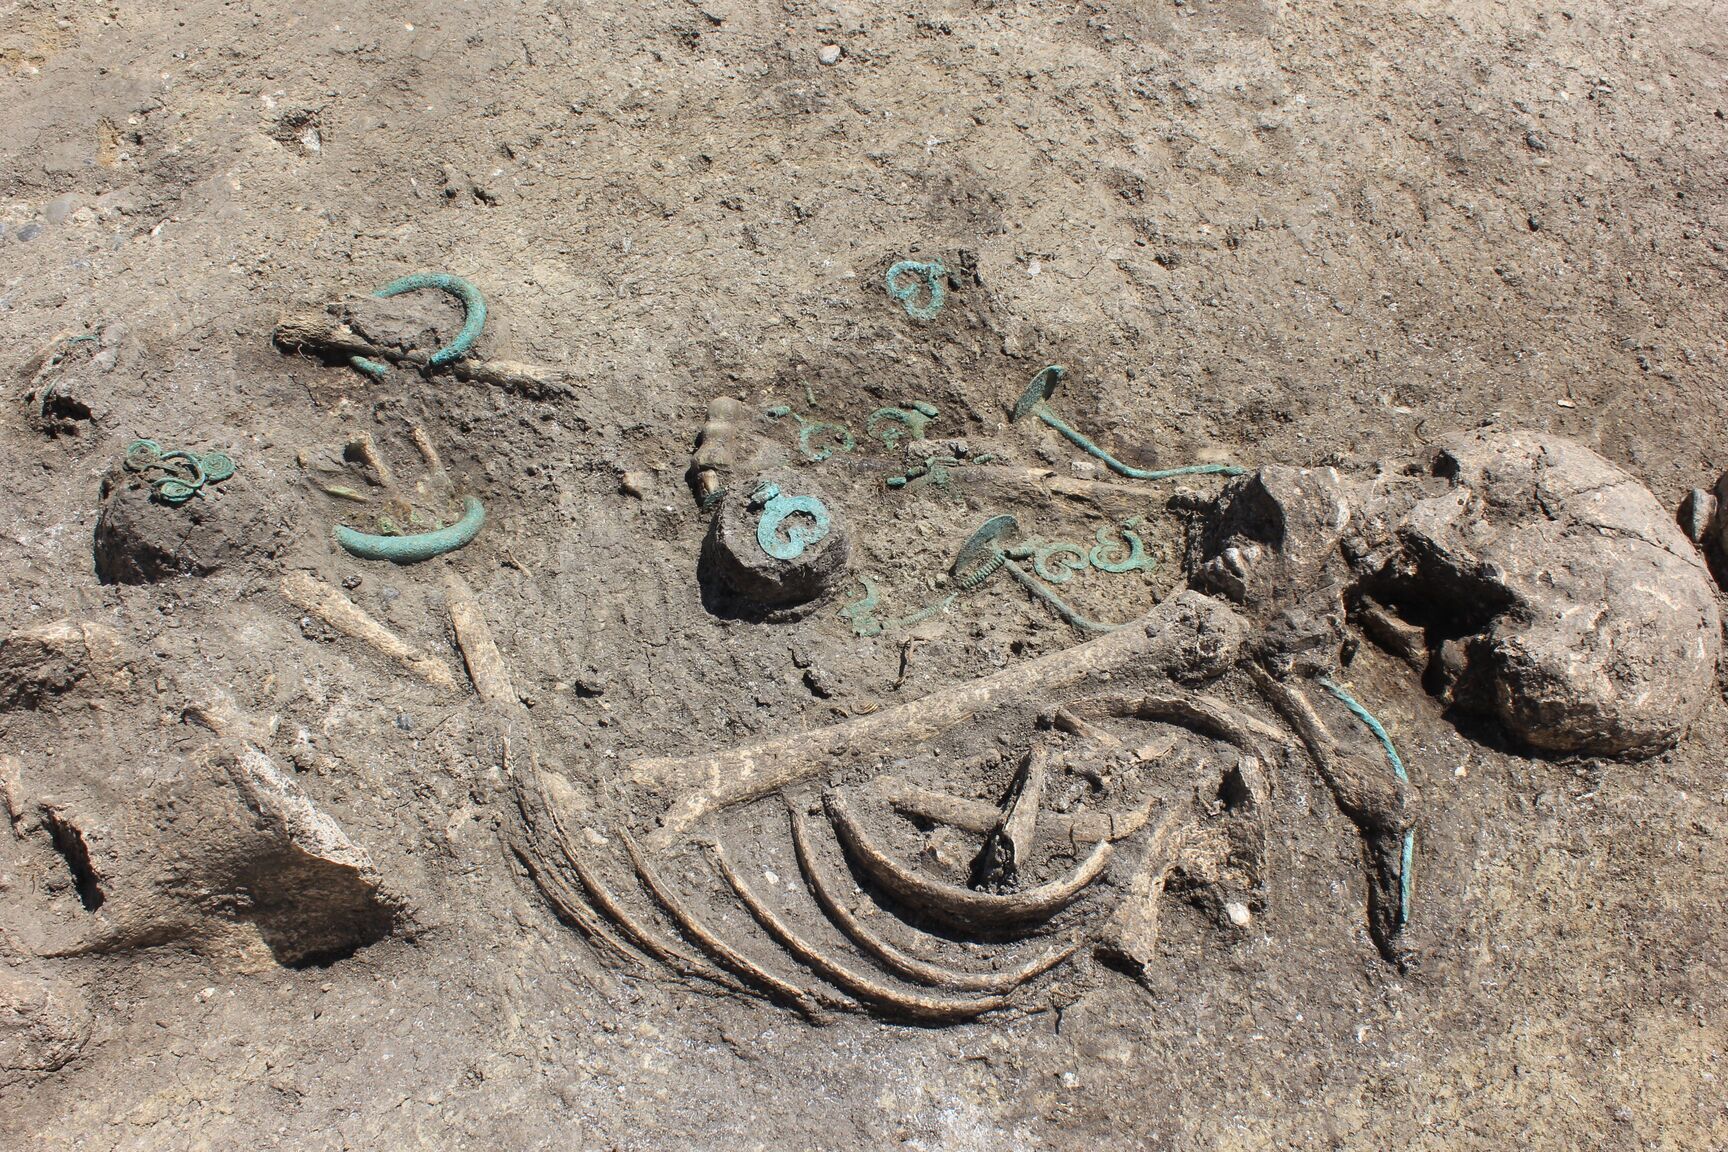 Mađarski arheolozi pronašli su blago iz bronzanog doba